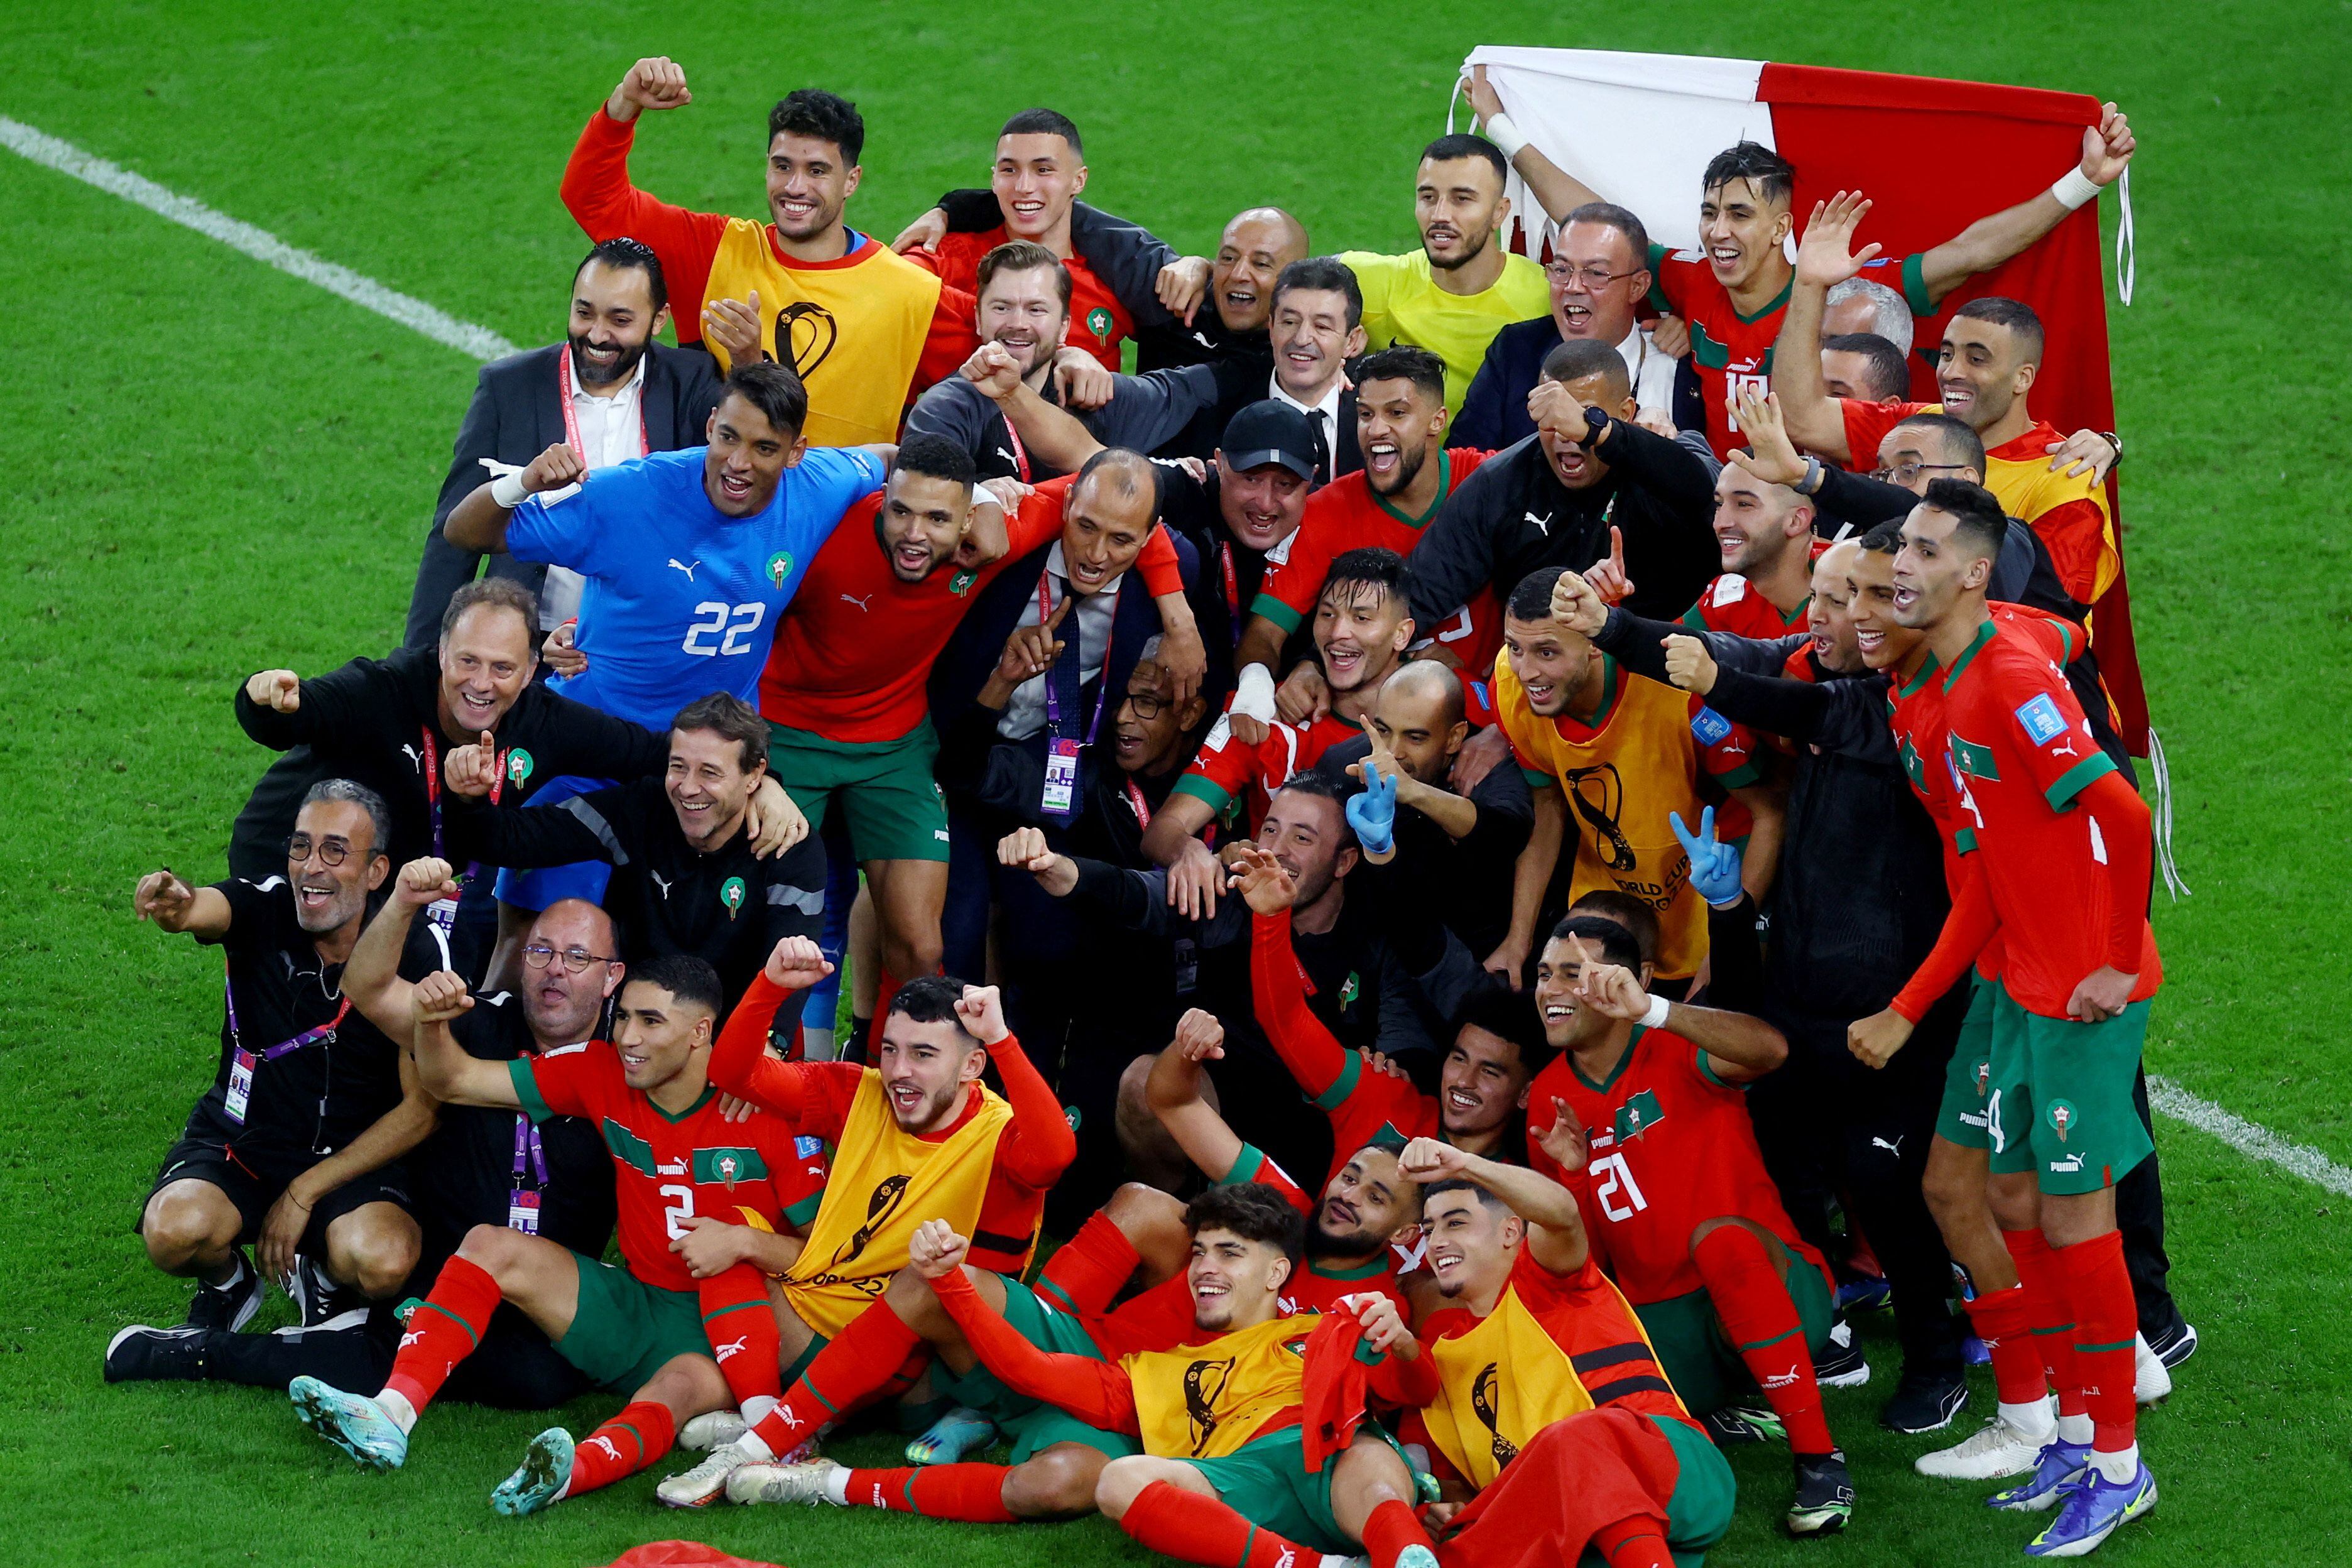 El festejo de los marroquíes luego de su histórico triunfo ante Portugal (REUTERS/Paul Childs)